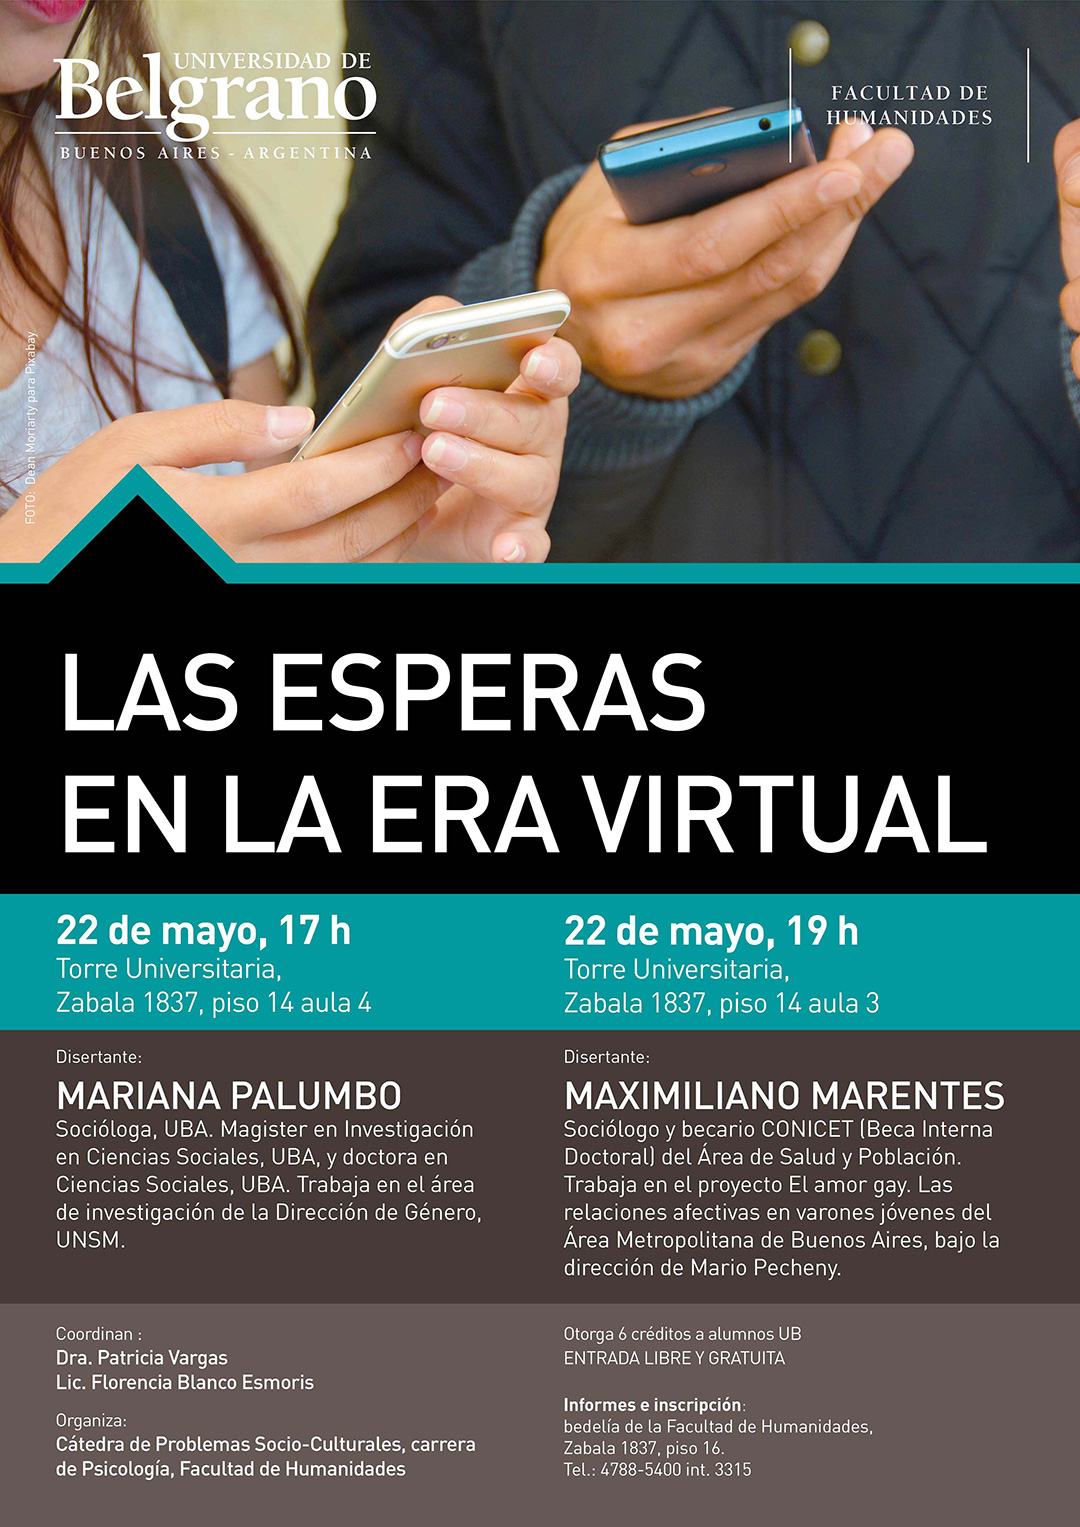 Universidad de Belgrano | Facultad de Humanidades | Las Esperas en la Era Virtual